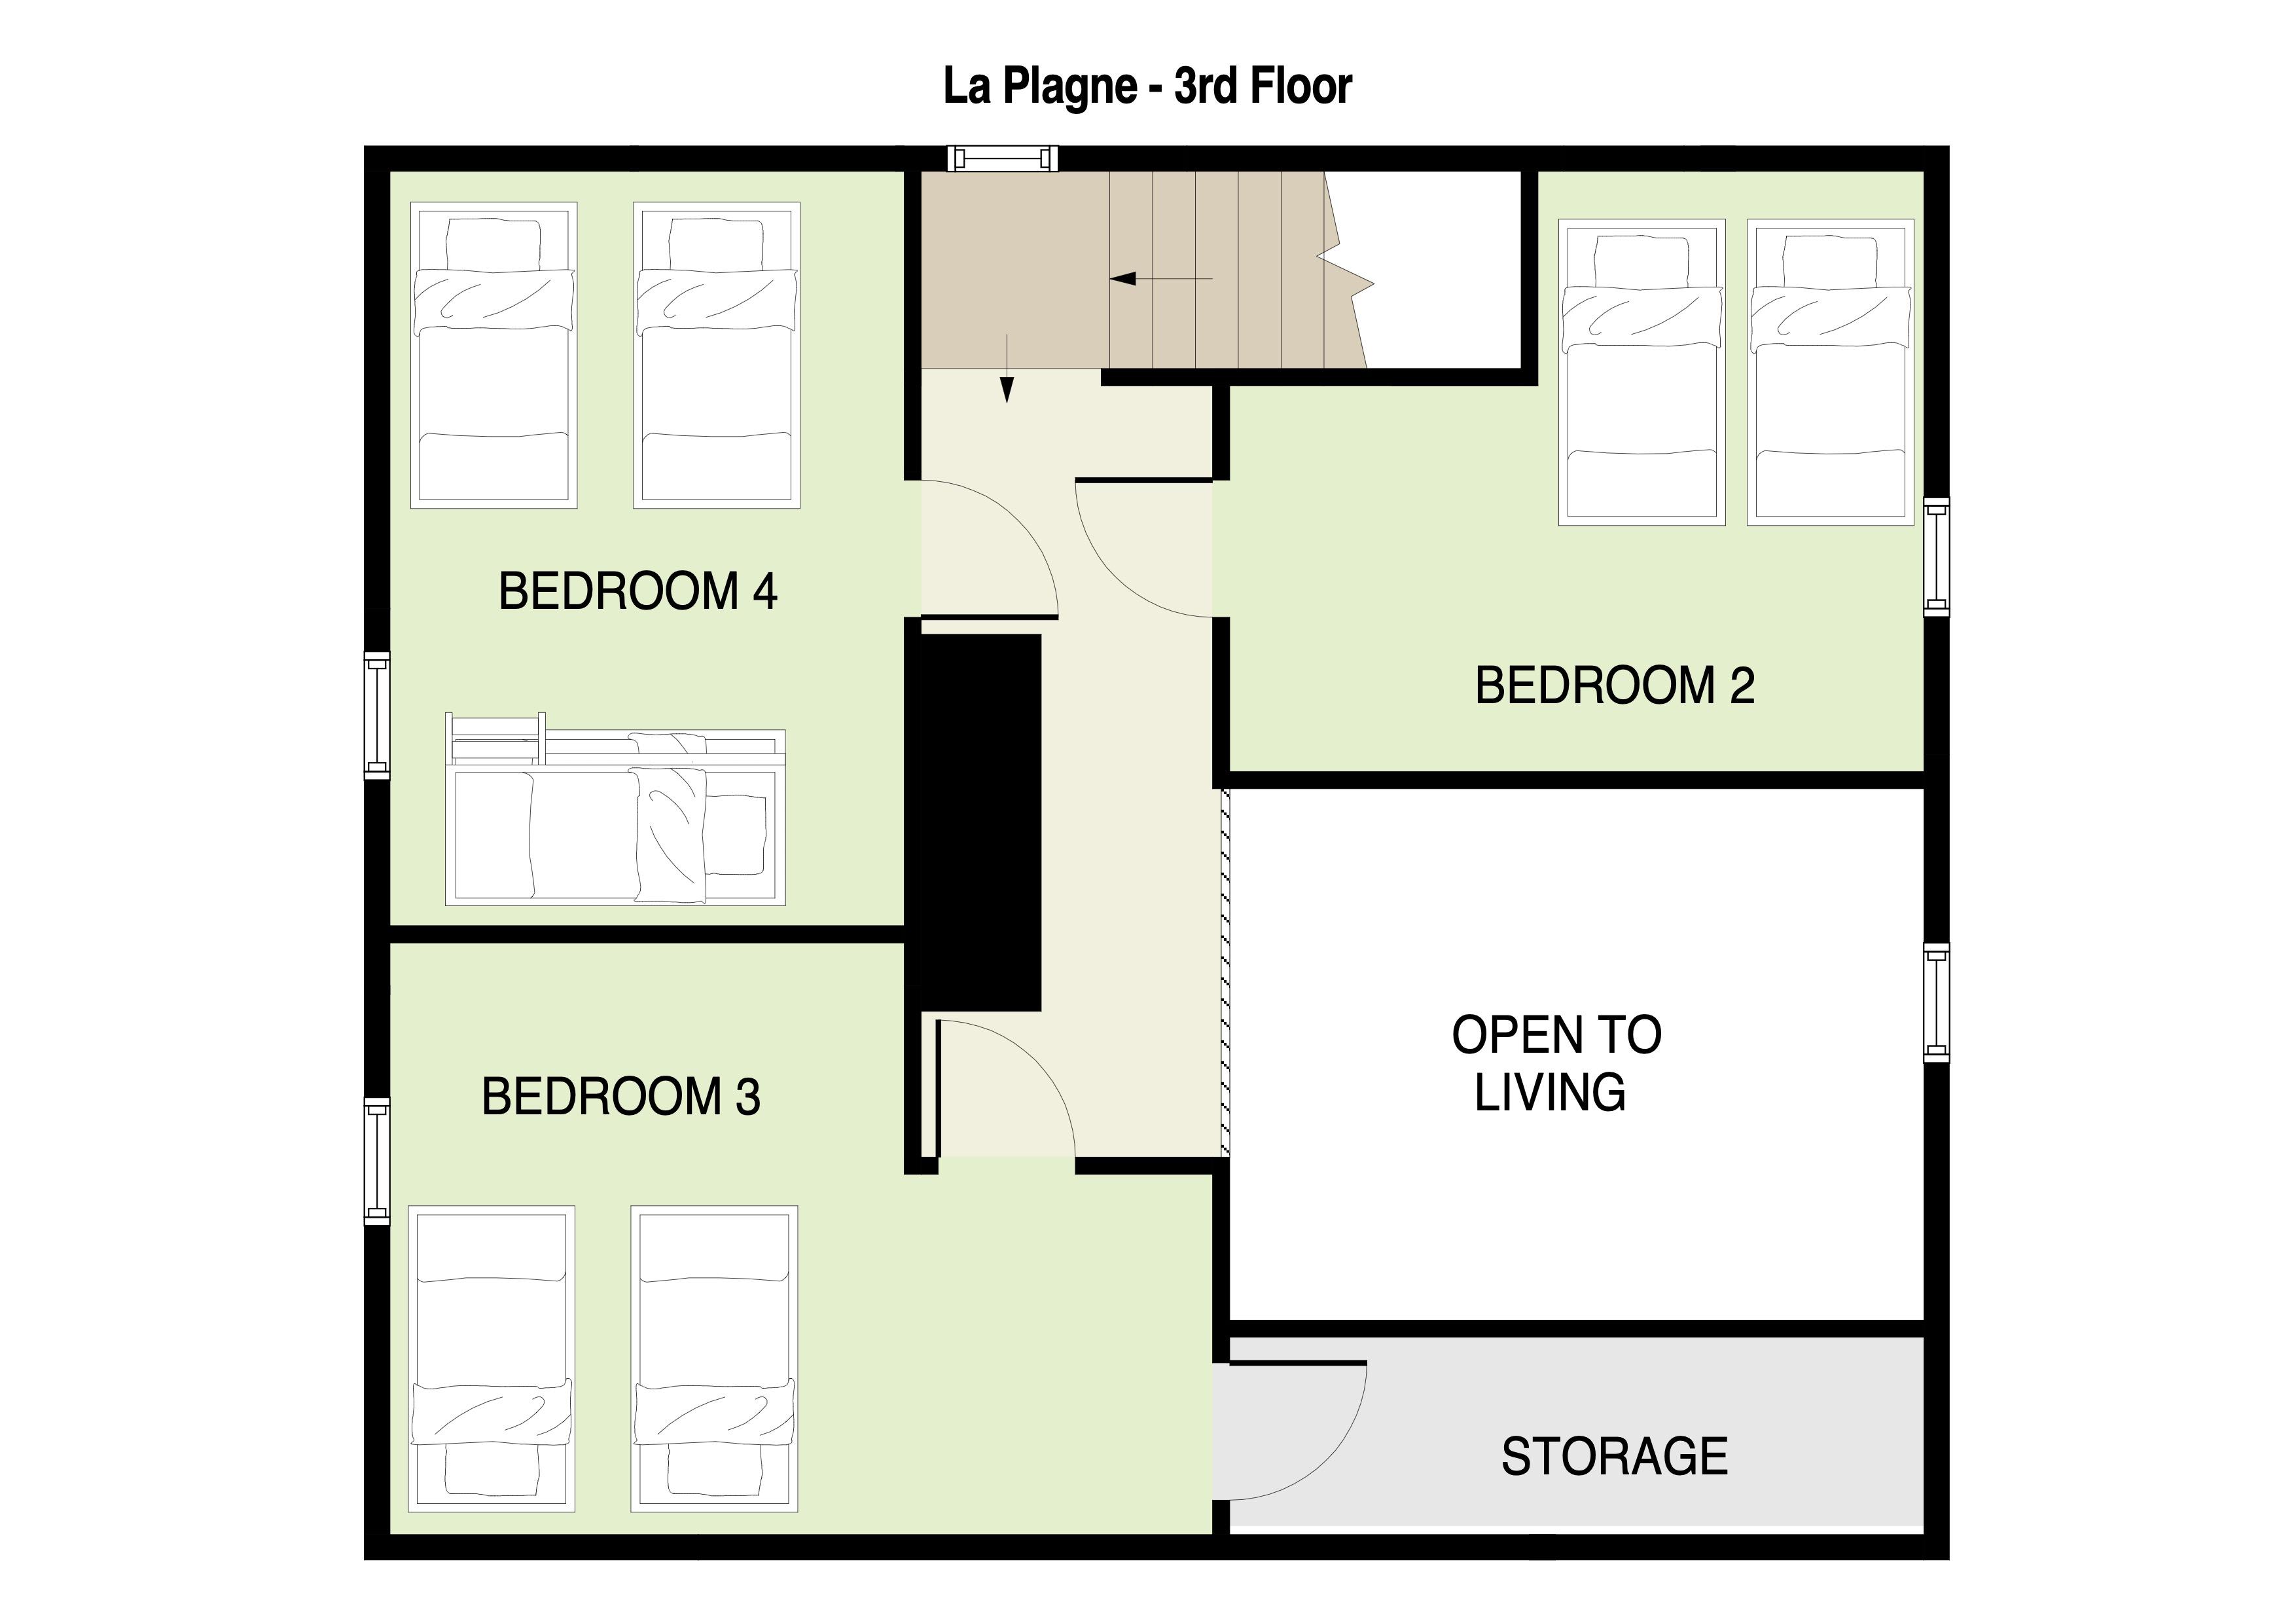 La Plagne 3rd Floor Plan